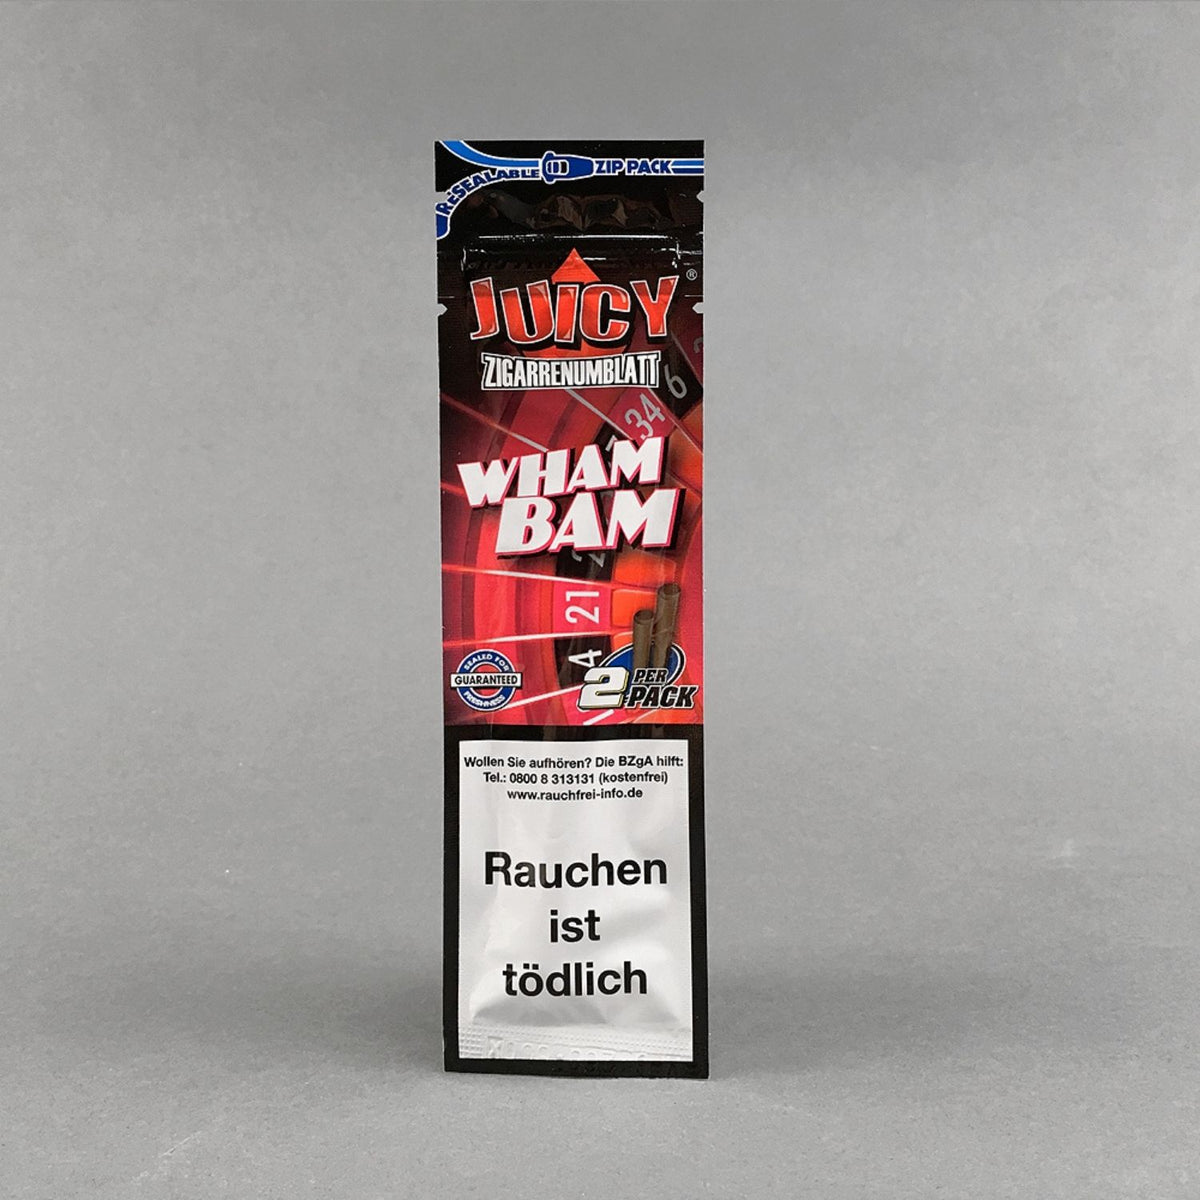 Juicy Double Wraps Blunt - Wham Bam Flavour